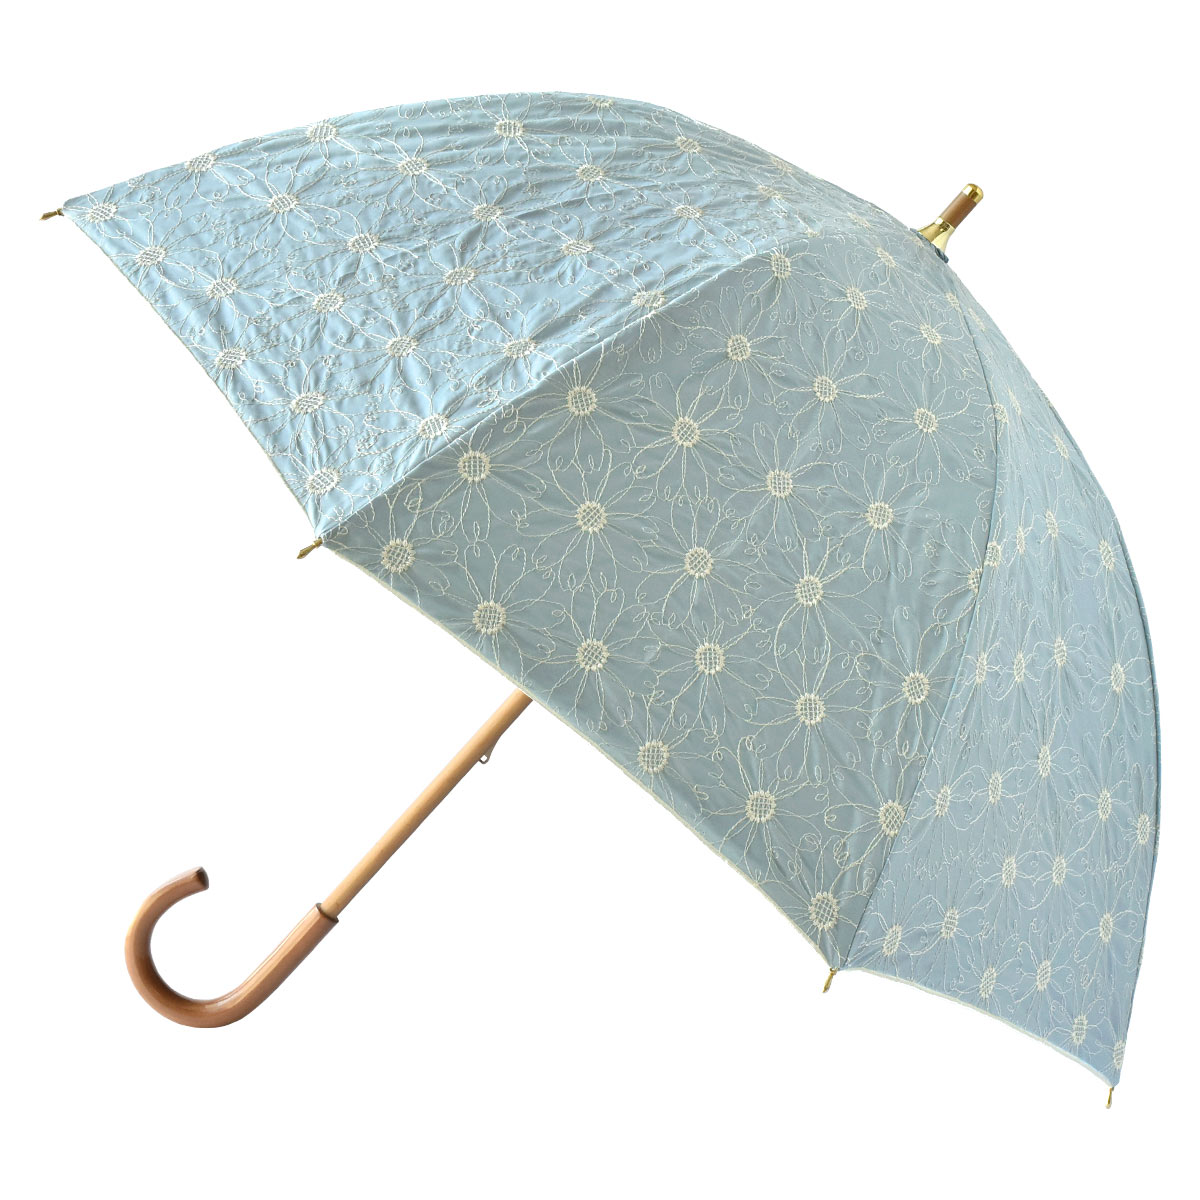 日傘 長傘 完全遮光 軽量 撥水 バンブー 母の日ギフト 遮光率100% 遮熱 涼しい かわいい ゴ...